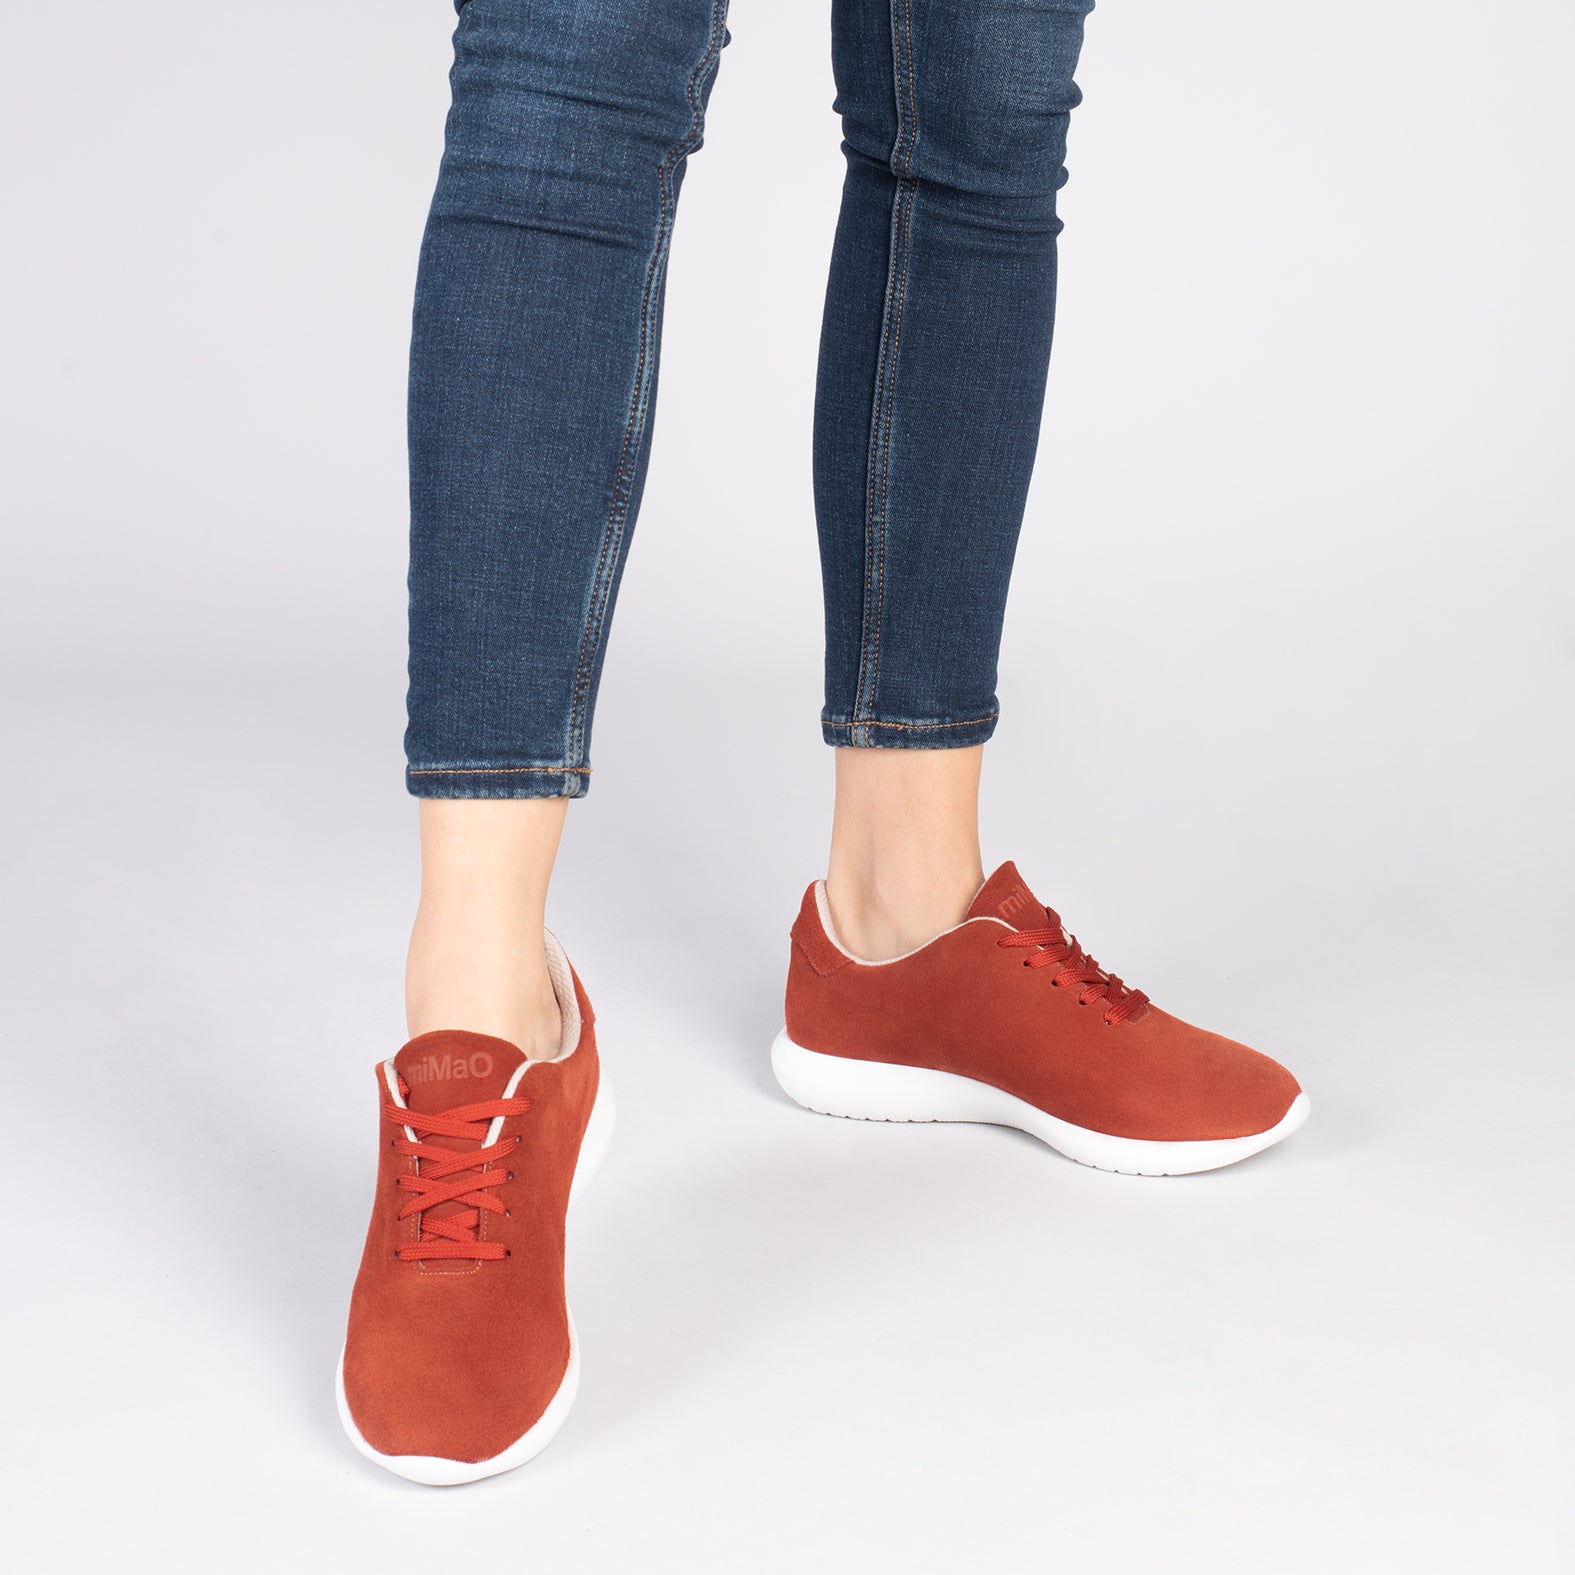 WALK – ORANGE comfortable women’s sneakers